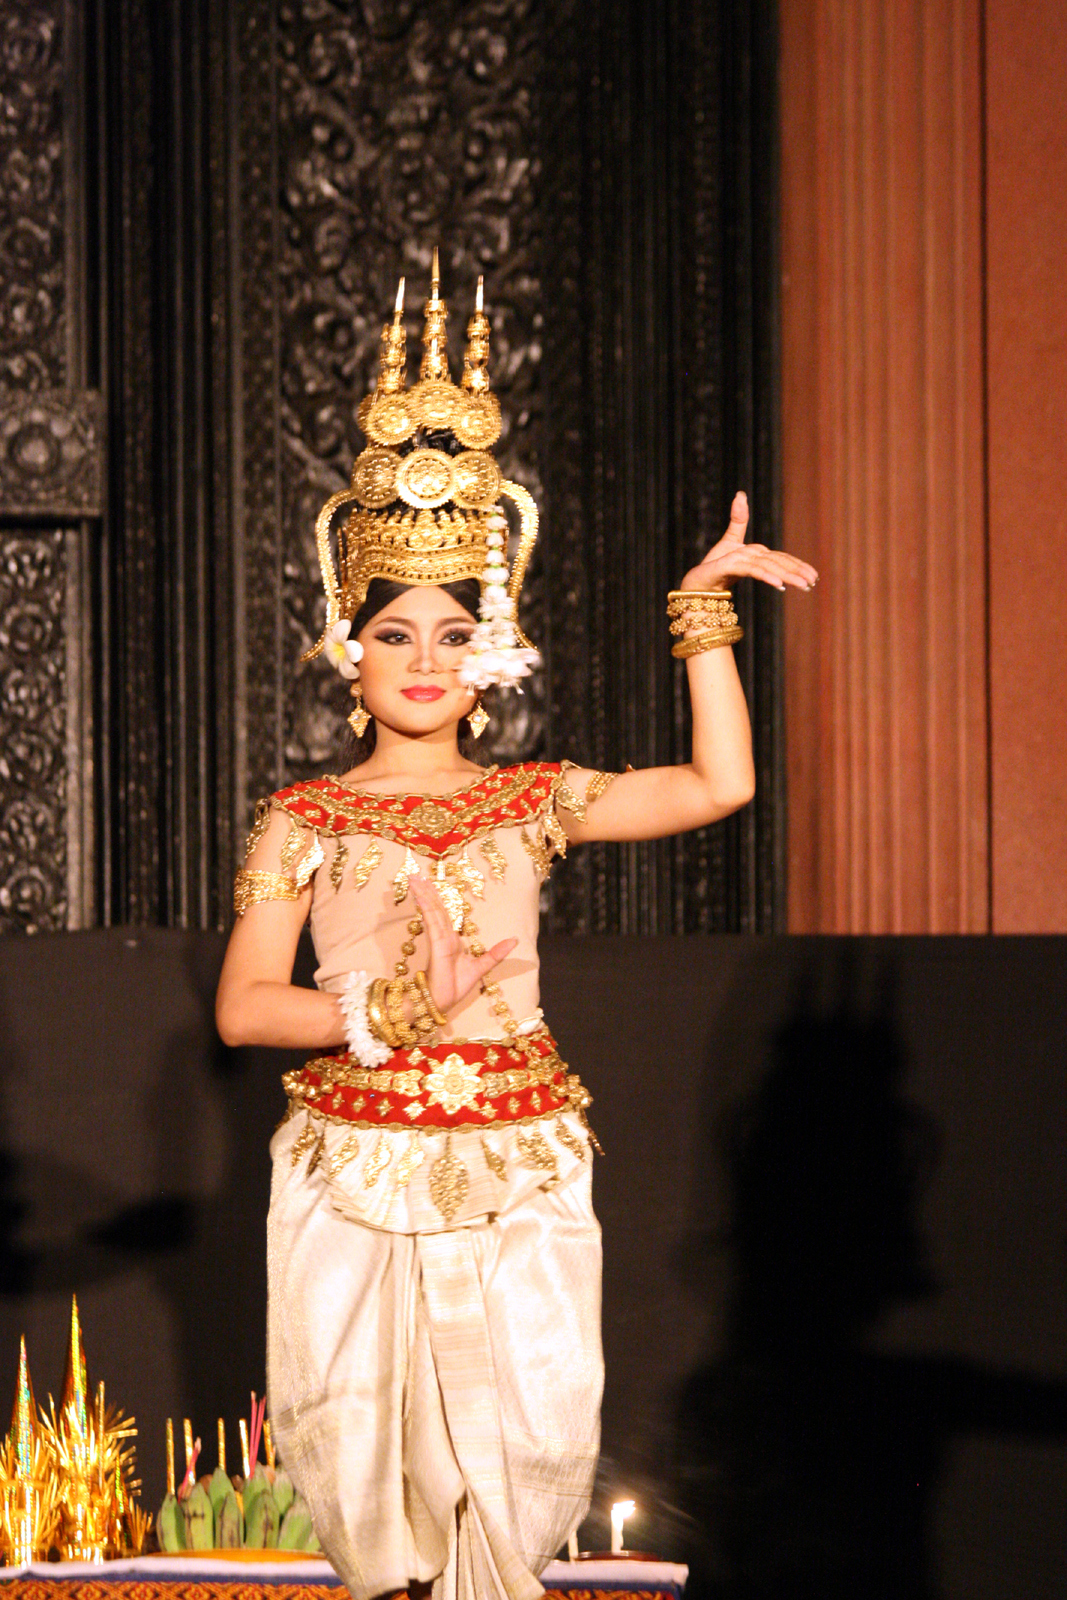 Vẻ đẹp tuyệt vời và đầy uyển chuyển của những vũ nữ Apsara thương cảm hút hồn bất kì ai đã từng xem qua hình ảnh của họ. Với bộ trang phục lộng lẫy, nhưng lại tỉ mỉ tinh tế và quyến rũ, họ mang lại sức hấp dẫn triệu chứng cho văn hóa Campuchia.